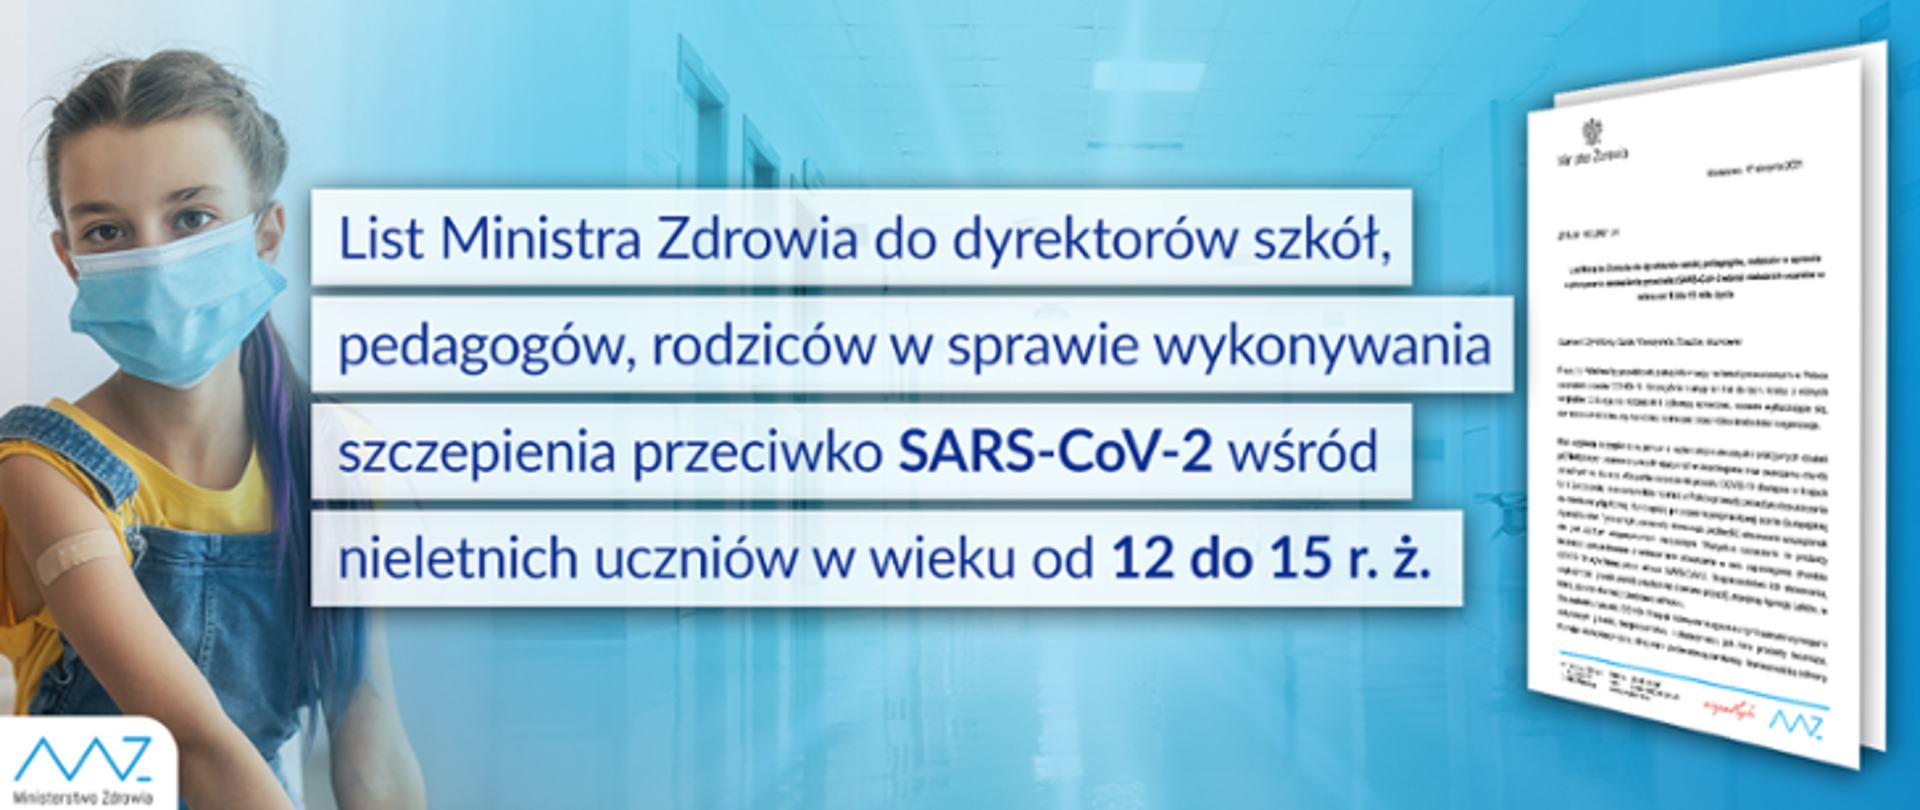 Obrazek z tytułem - List ministra zdrowia do pedagogów, rodziców w sprawie wykonywania szczepień przeciwko SARS-CoV-2 wśród nieletnich uczniów od 12 do 15 r. ż.